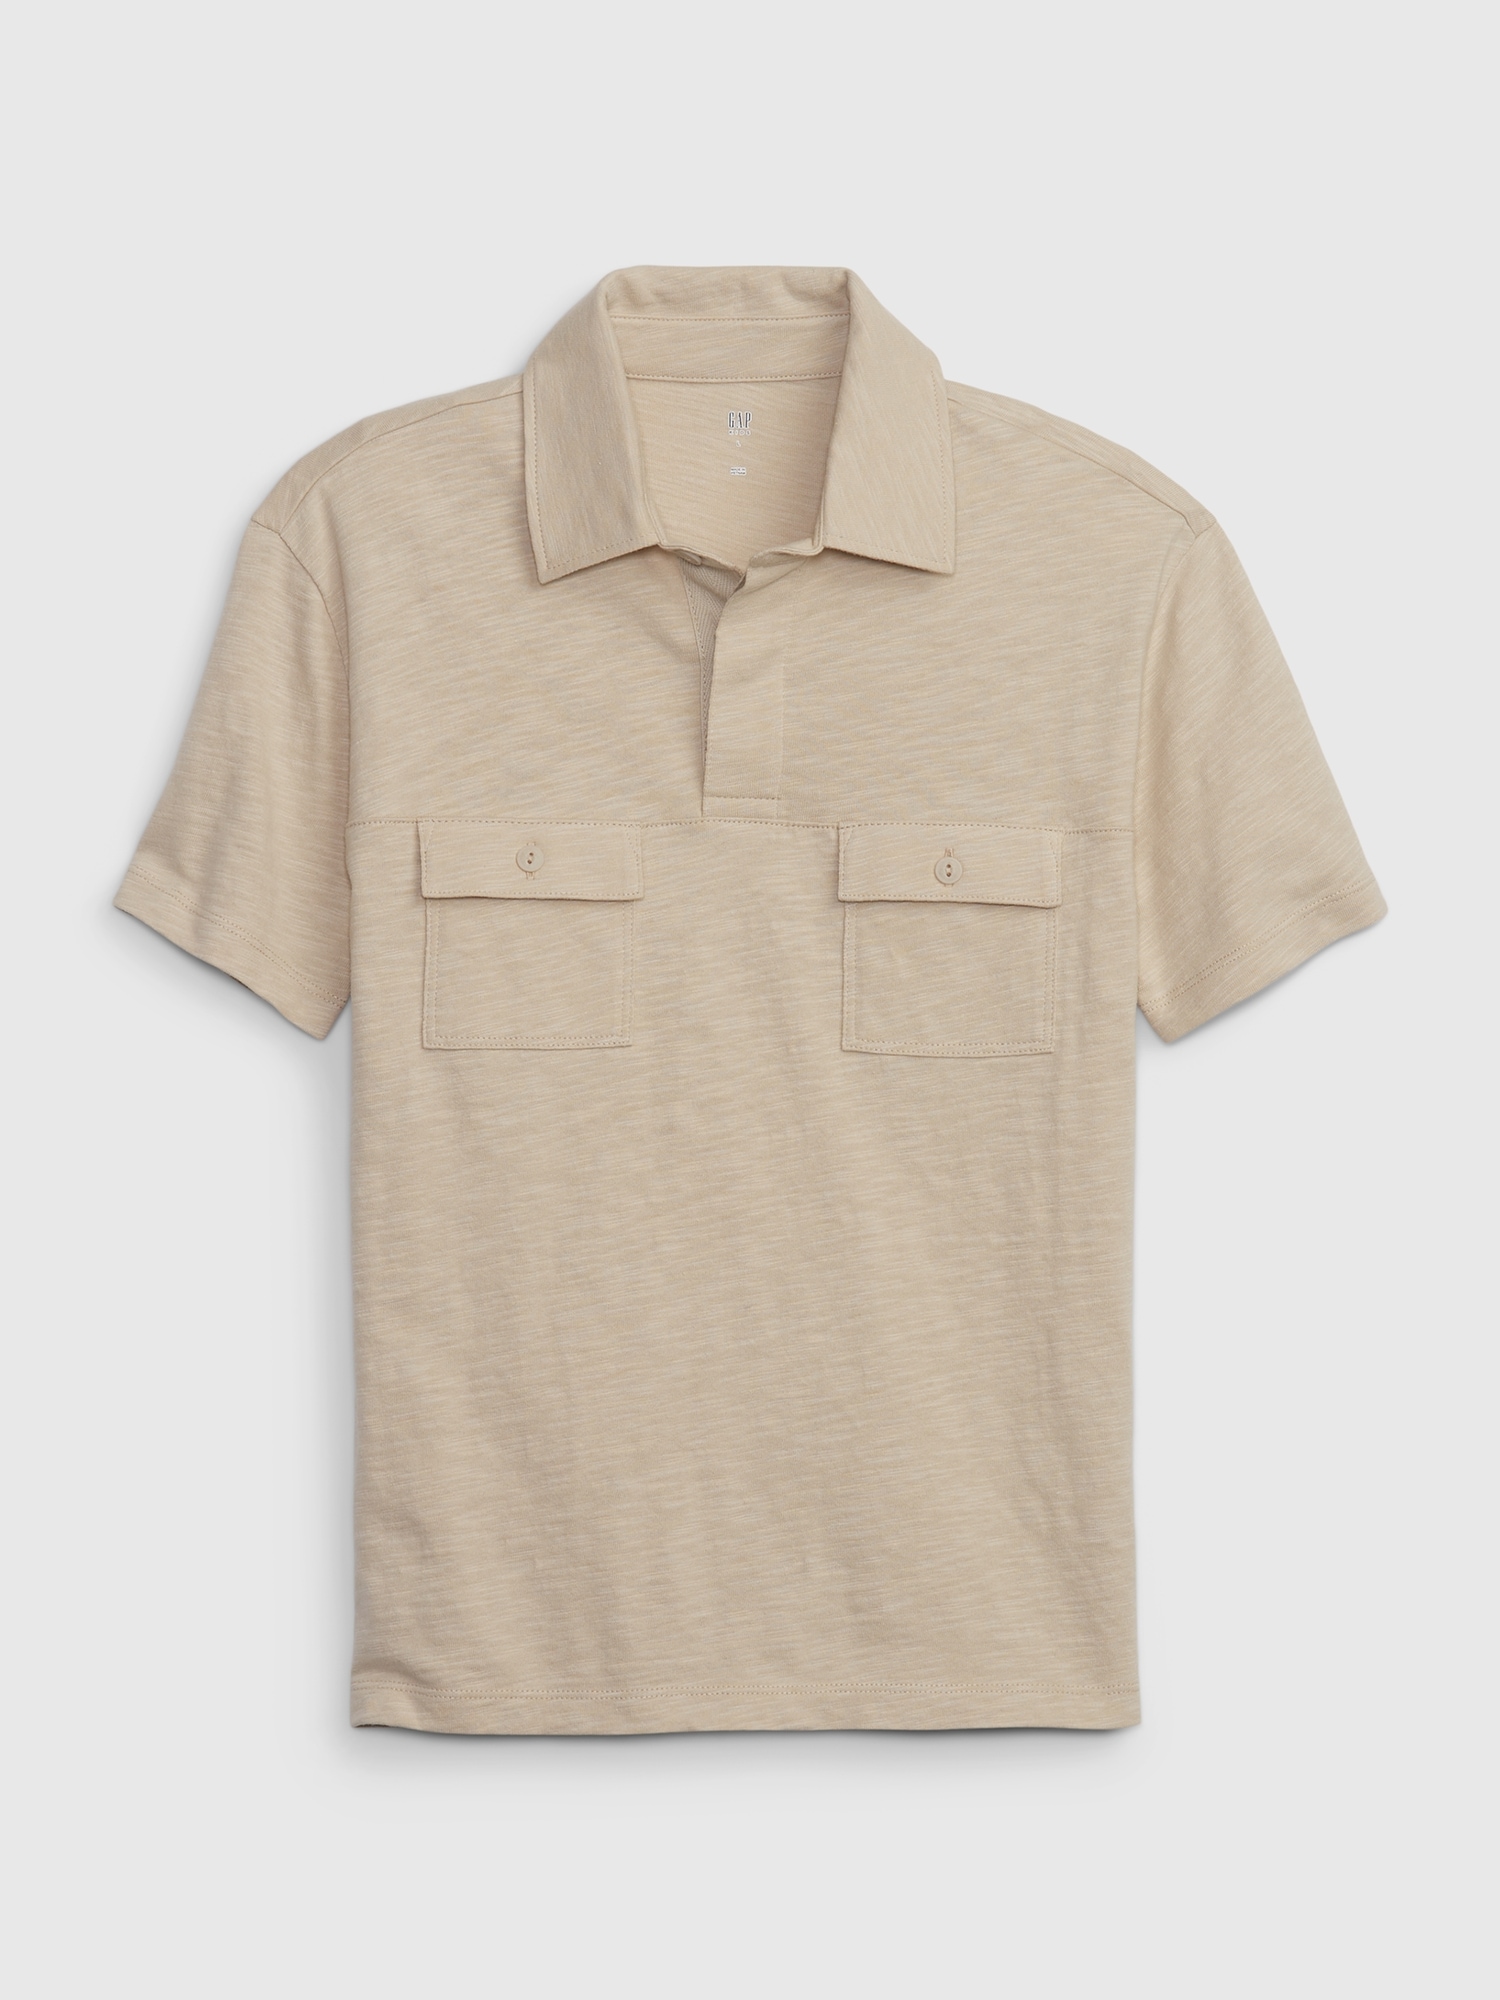 Kids Cotton Polo Shirt | Gap